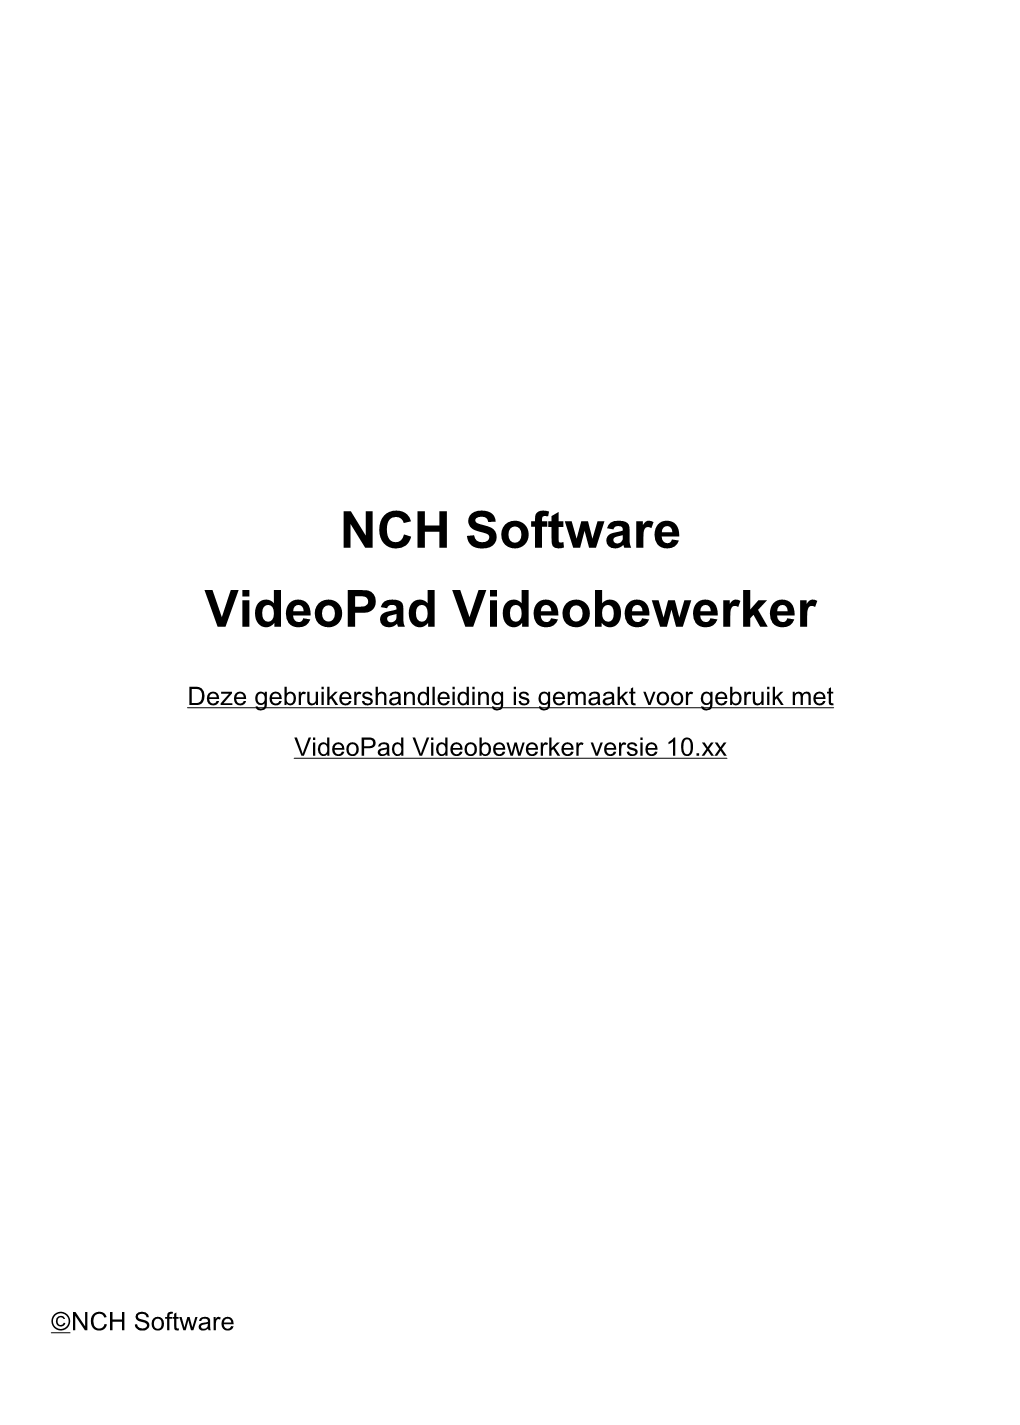 NCH Software Videopad Videobewerker